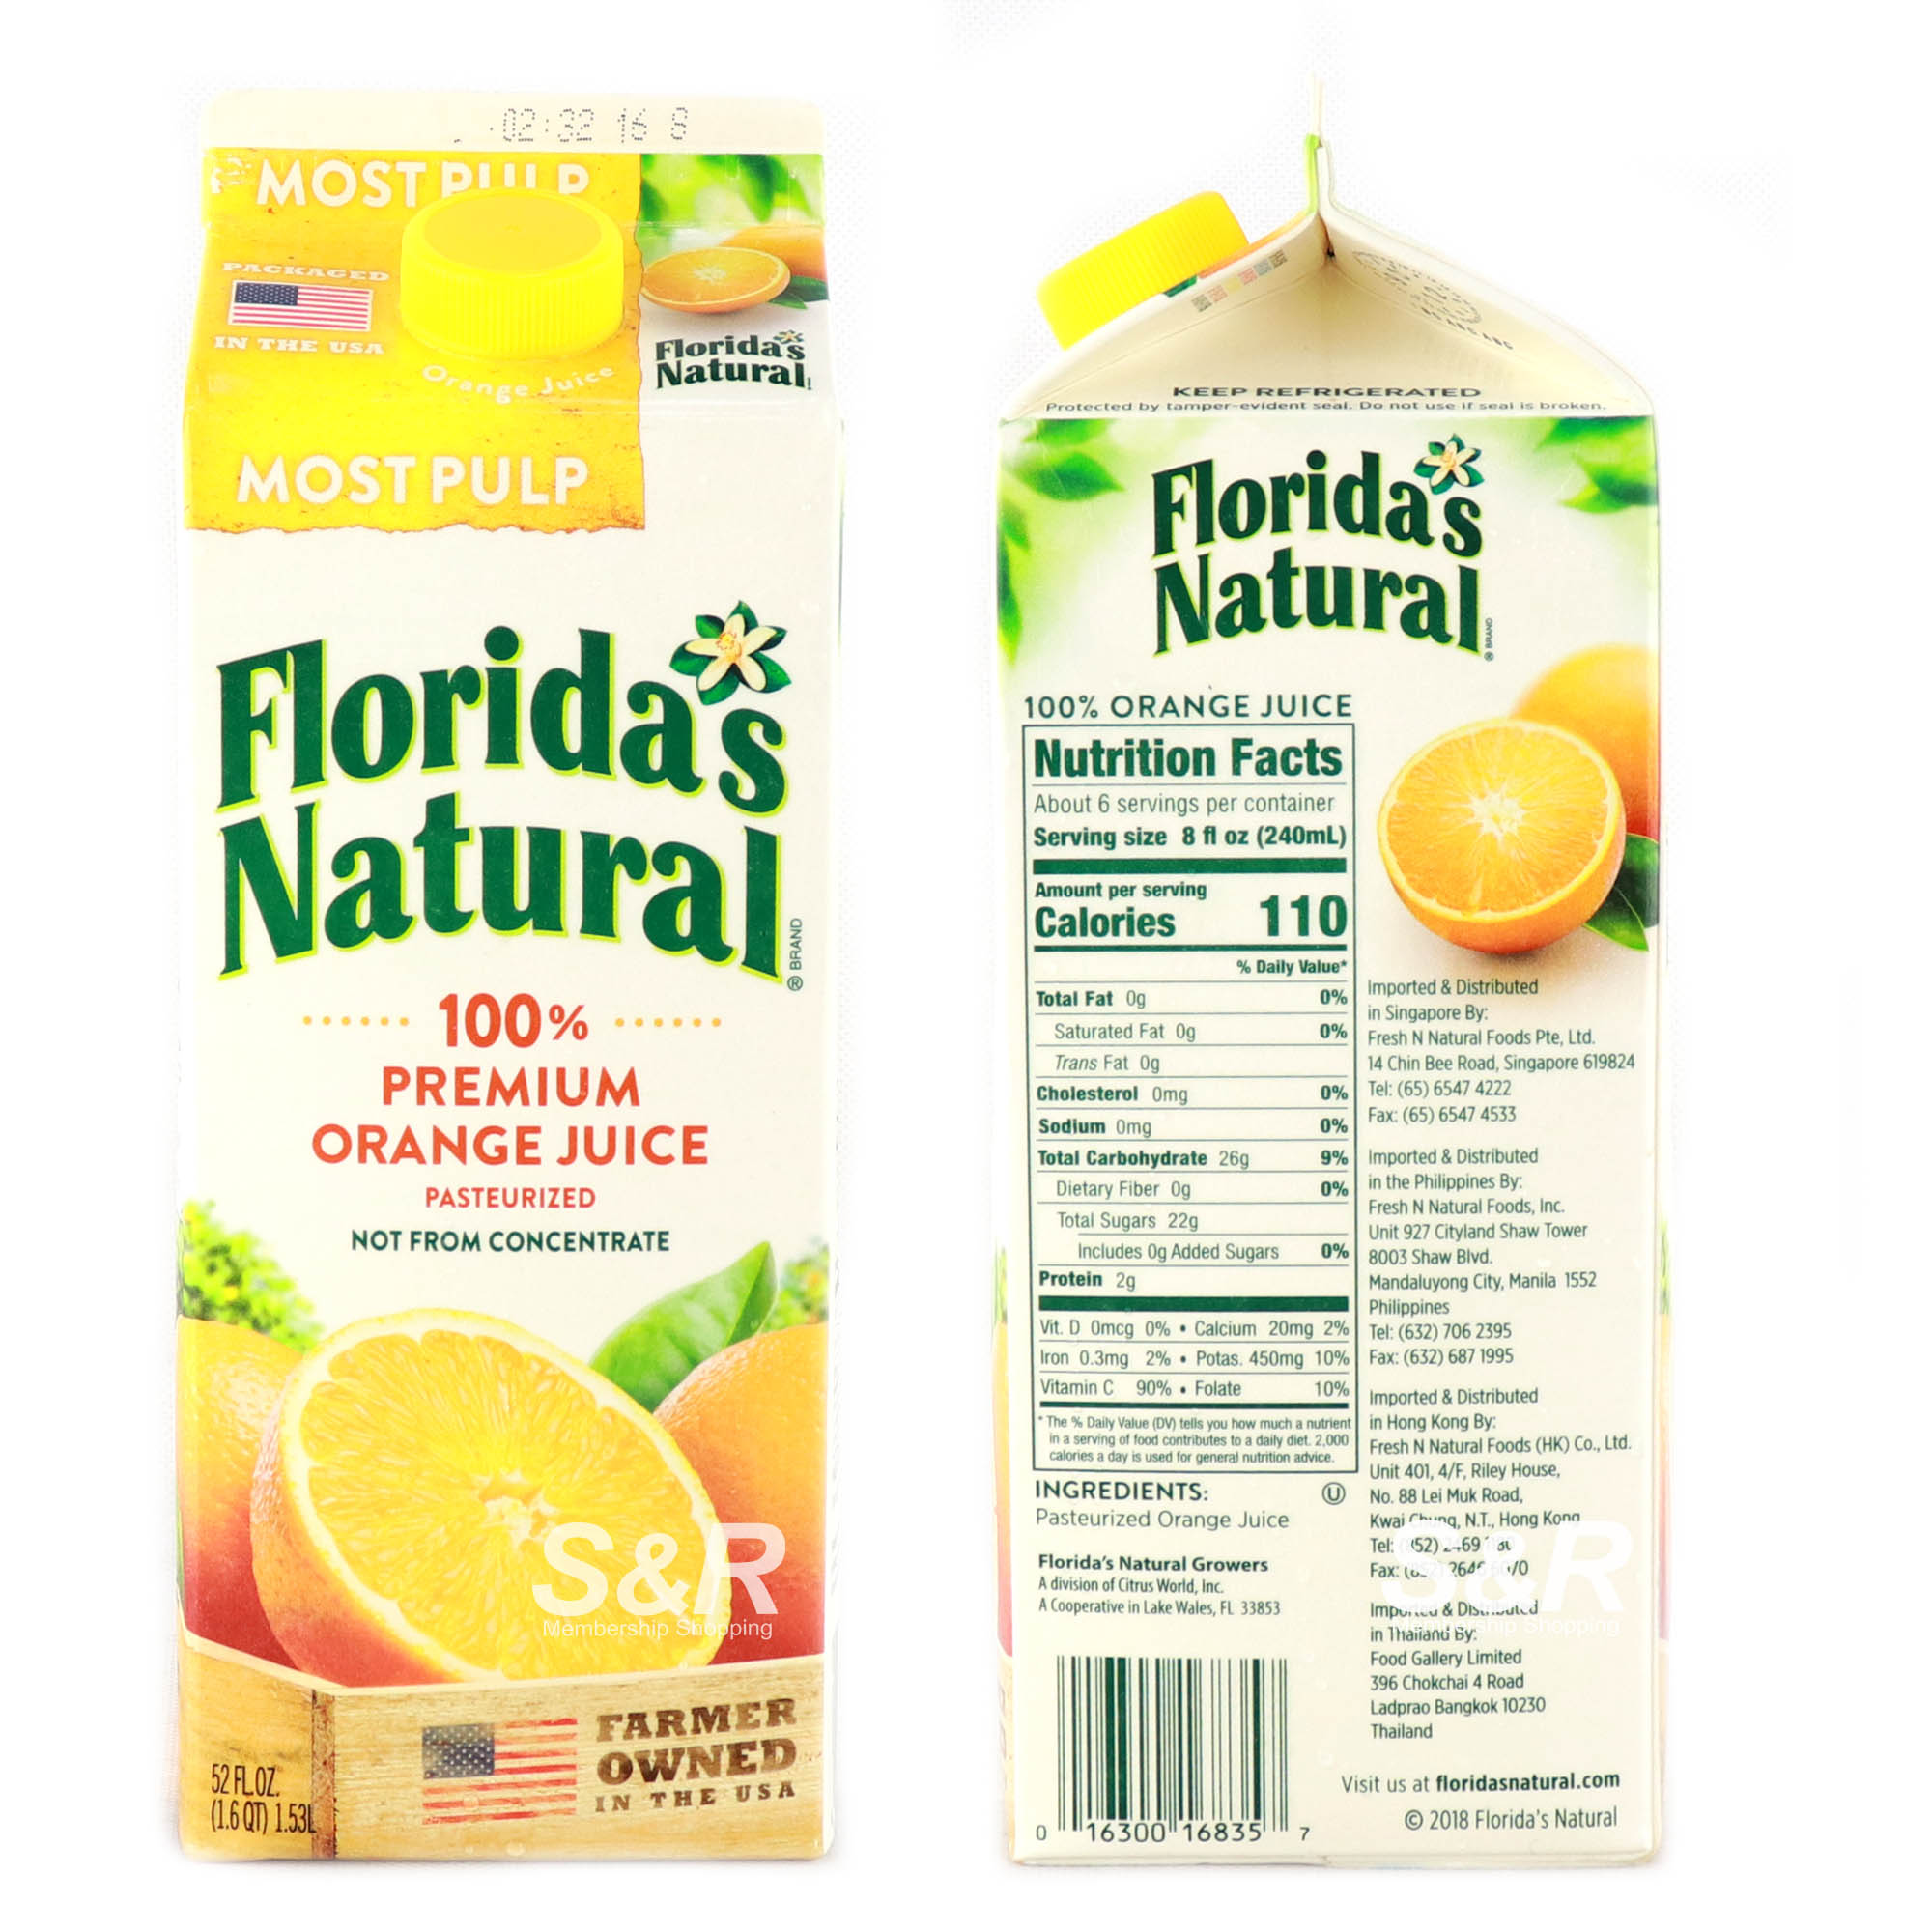 Premium Orange Juice